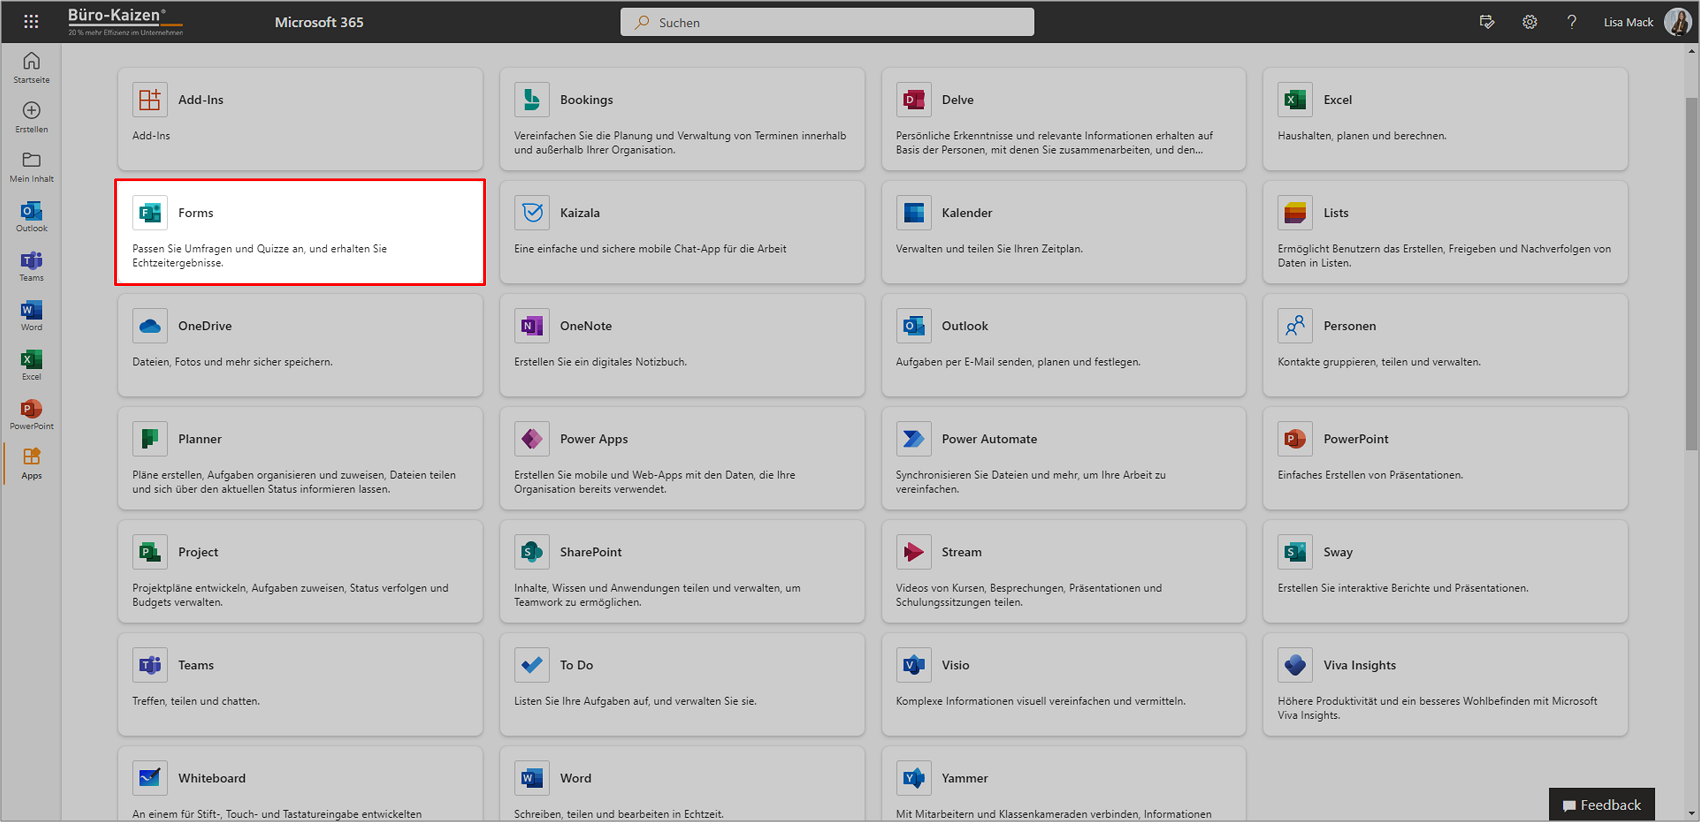 Die Web-App von Microsoft Forms